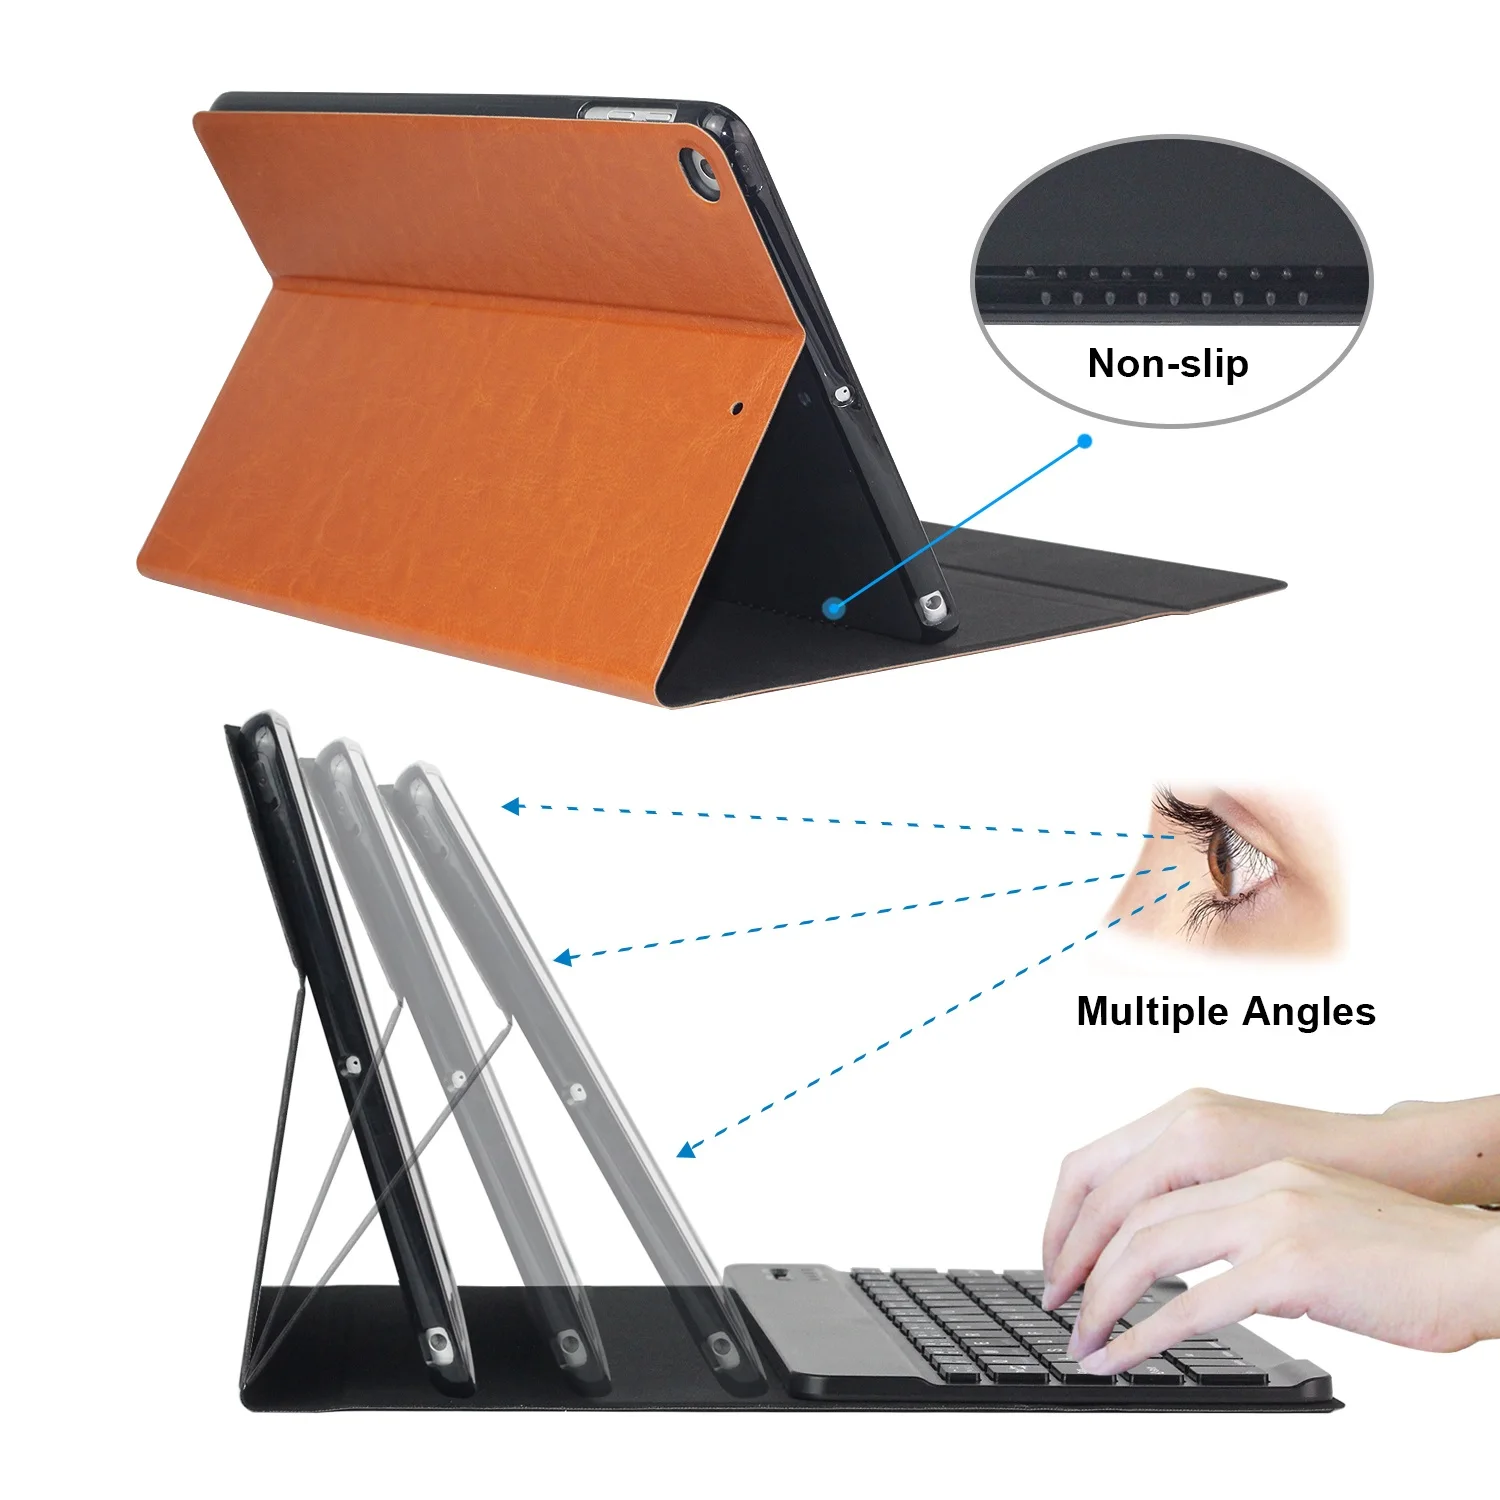 Чехол-клавиатура из искусственной кожи для iPad 9,7 /iPad Air 2 1, мягкий силиконовый чехол, подставка для iPad чехол 9,7"